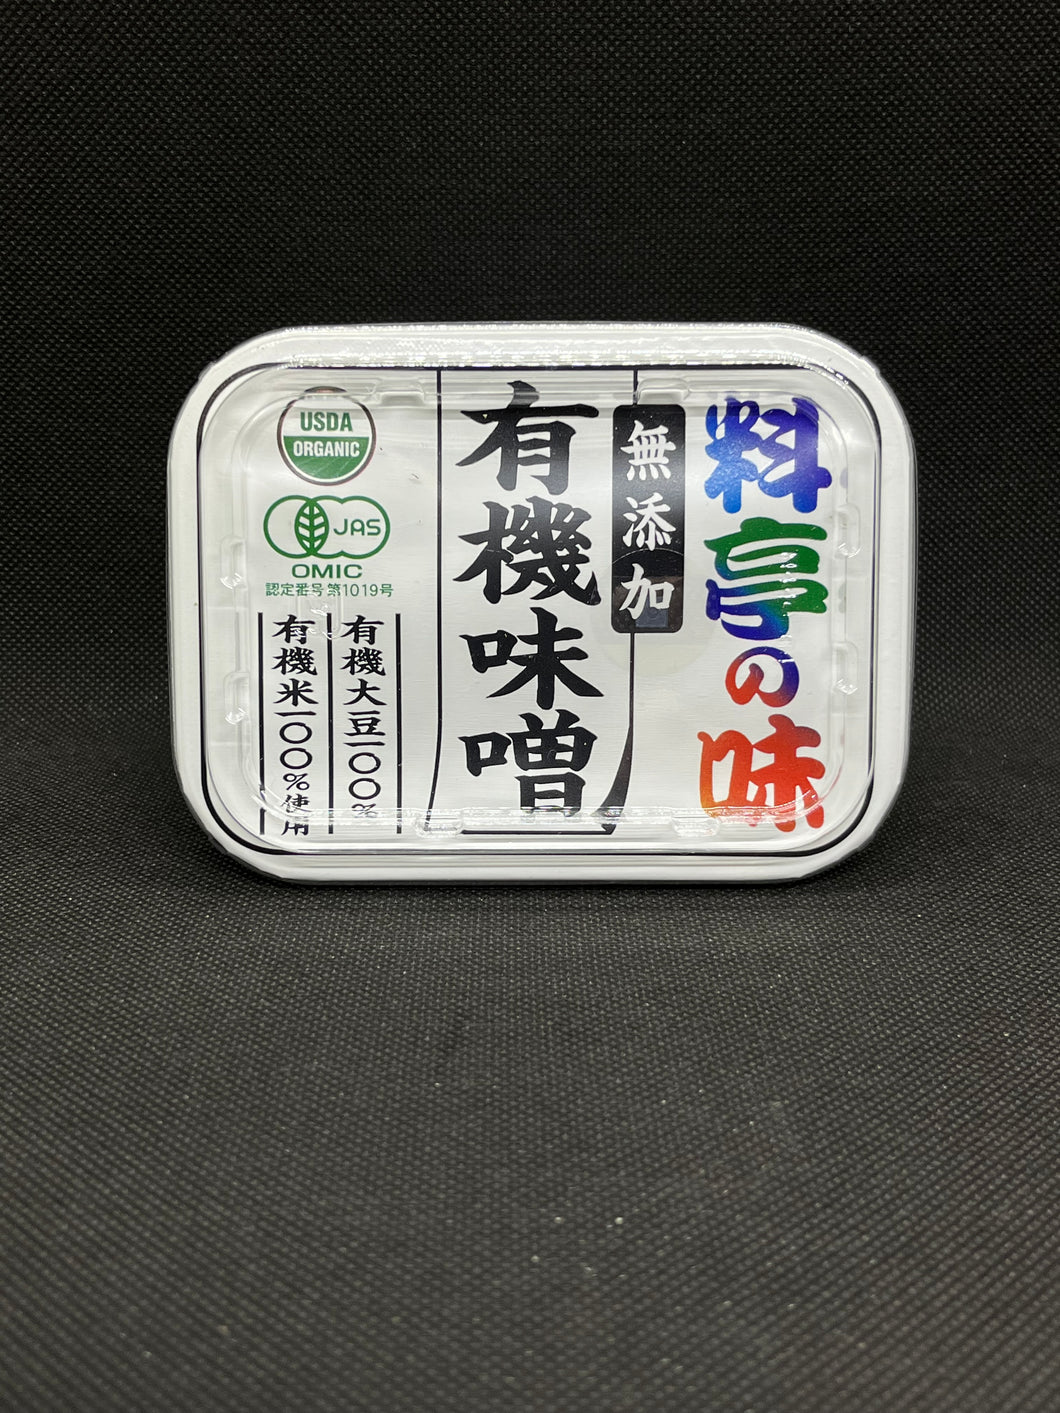 マルコメ 料亭の味 無添加味噌 (375g)